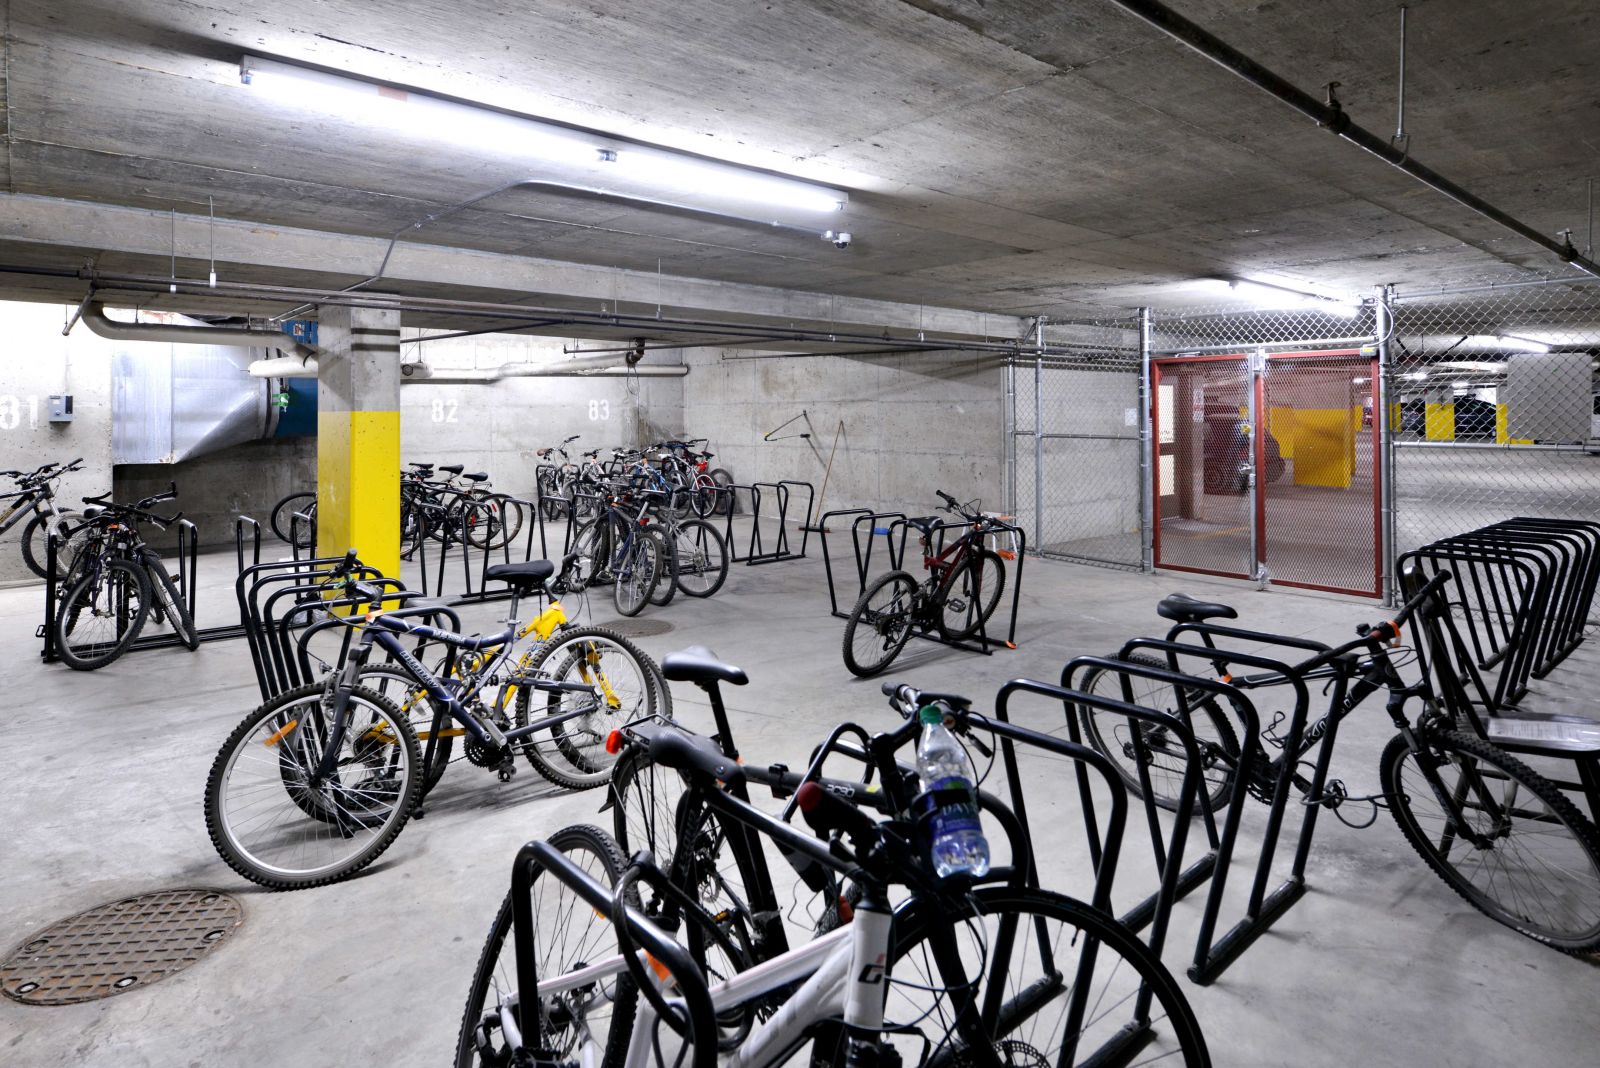 Bike storage in the Aspens Lodge garage